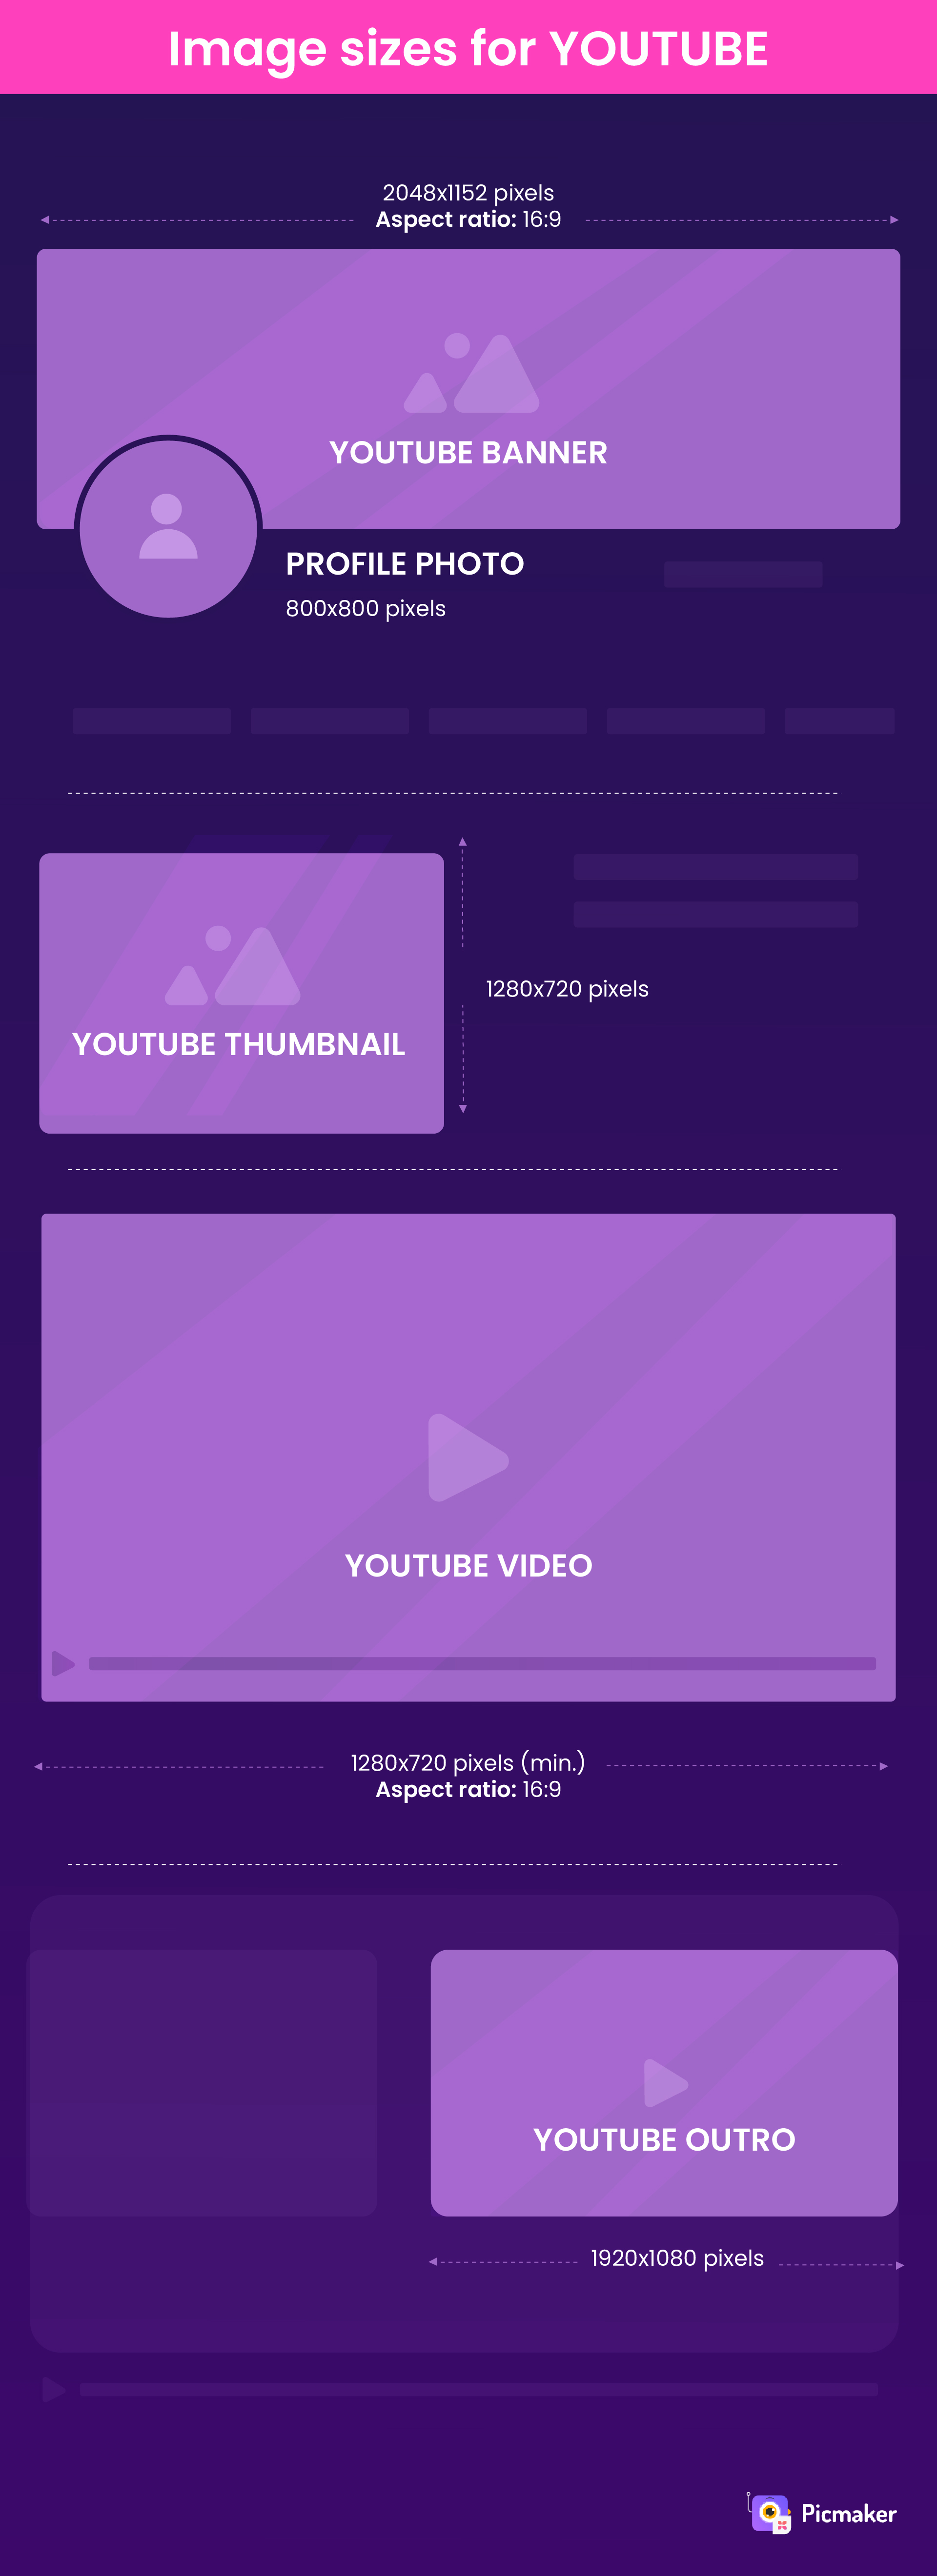 YouTube image sizes infographic